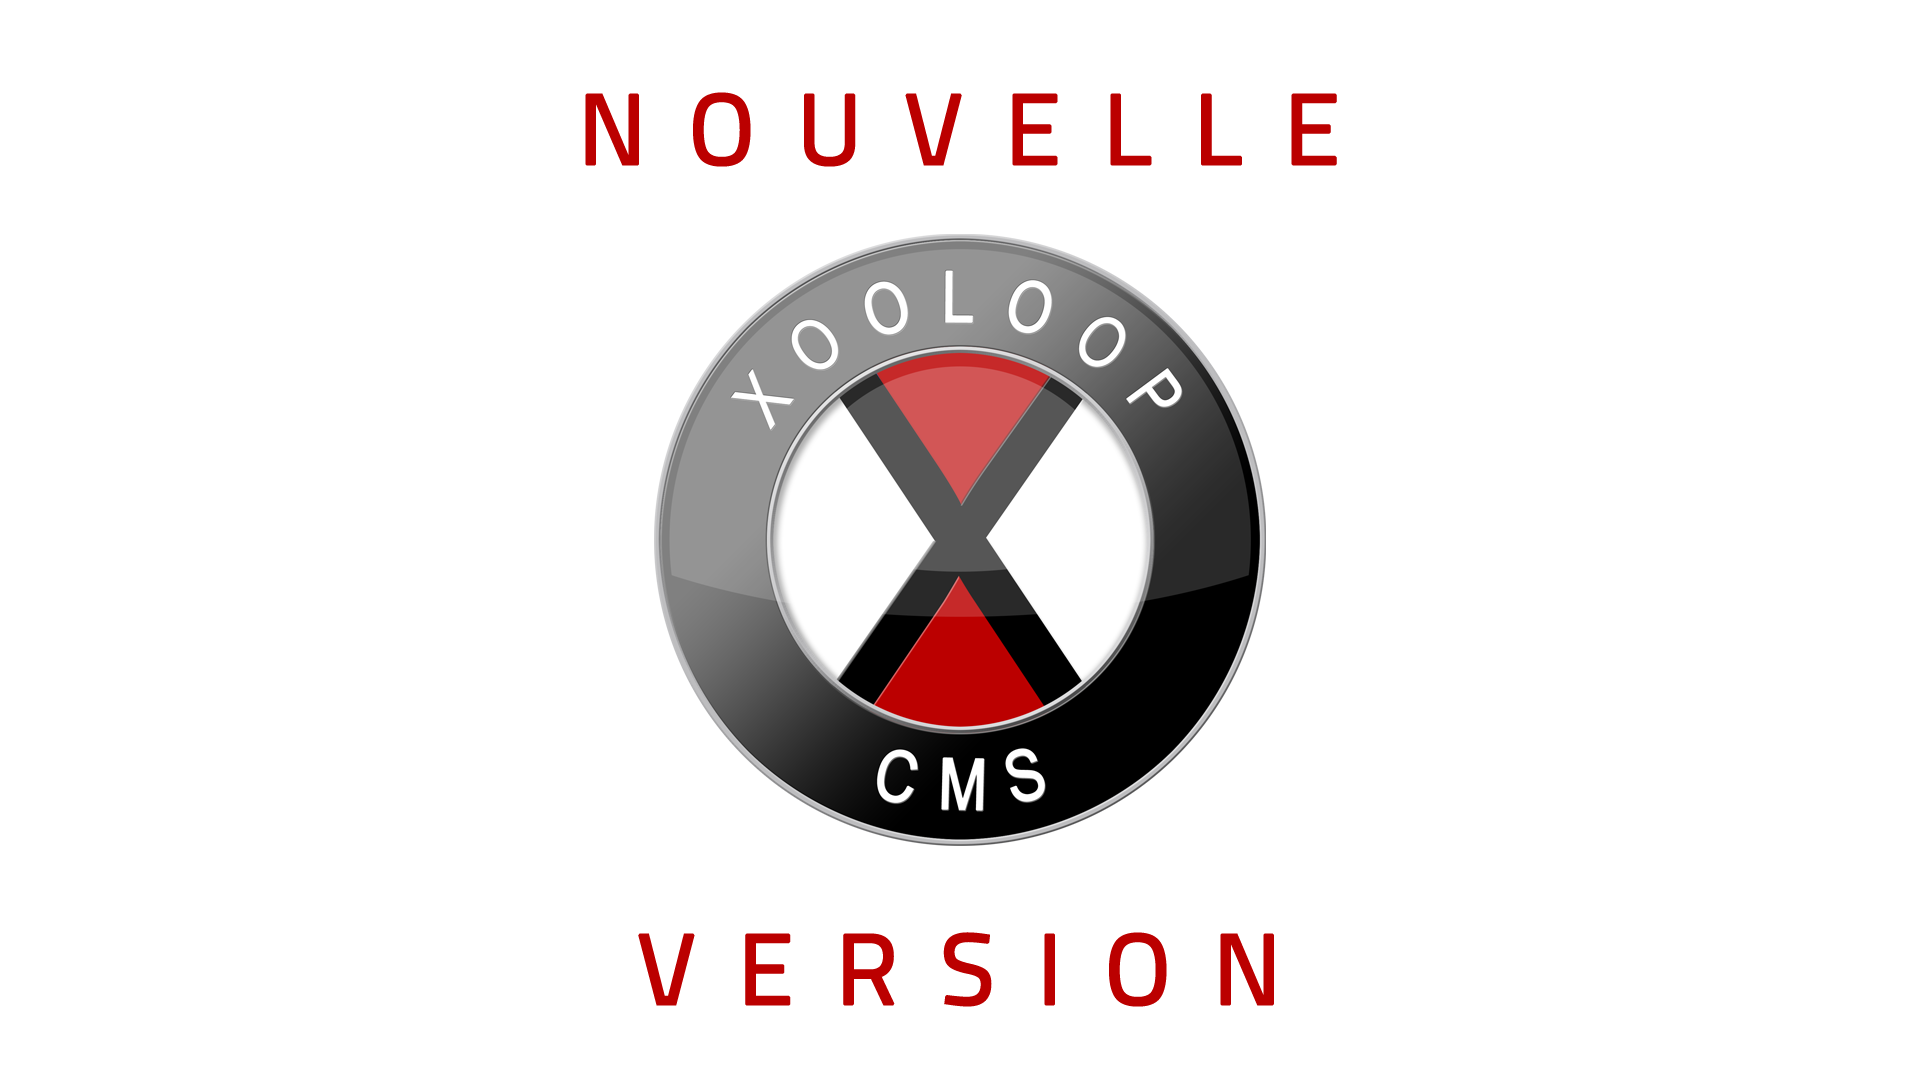 Sortie de Xooloop CMS v1.2.4 : compte utilisateur, alertes avancées, personnalisations